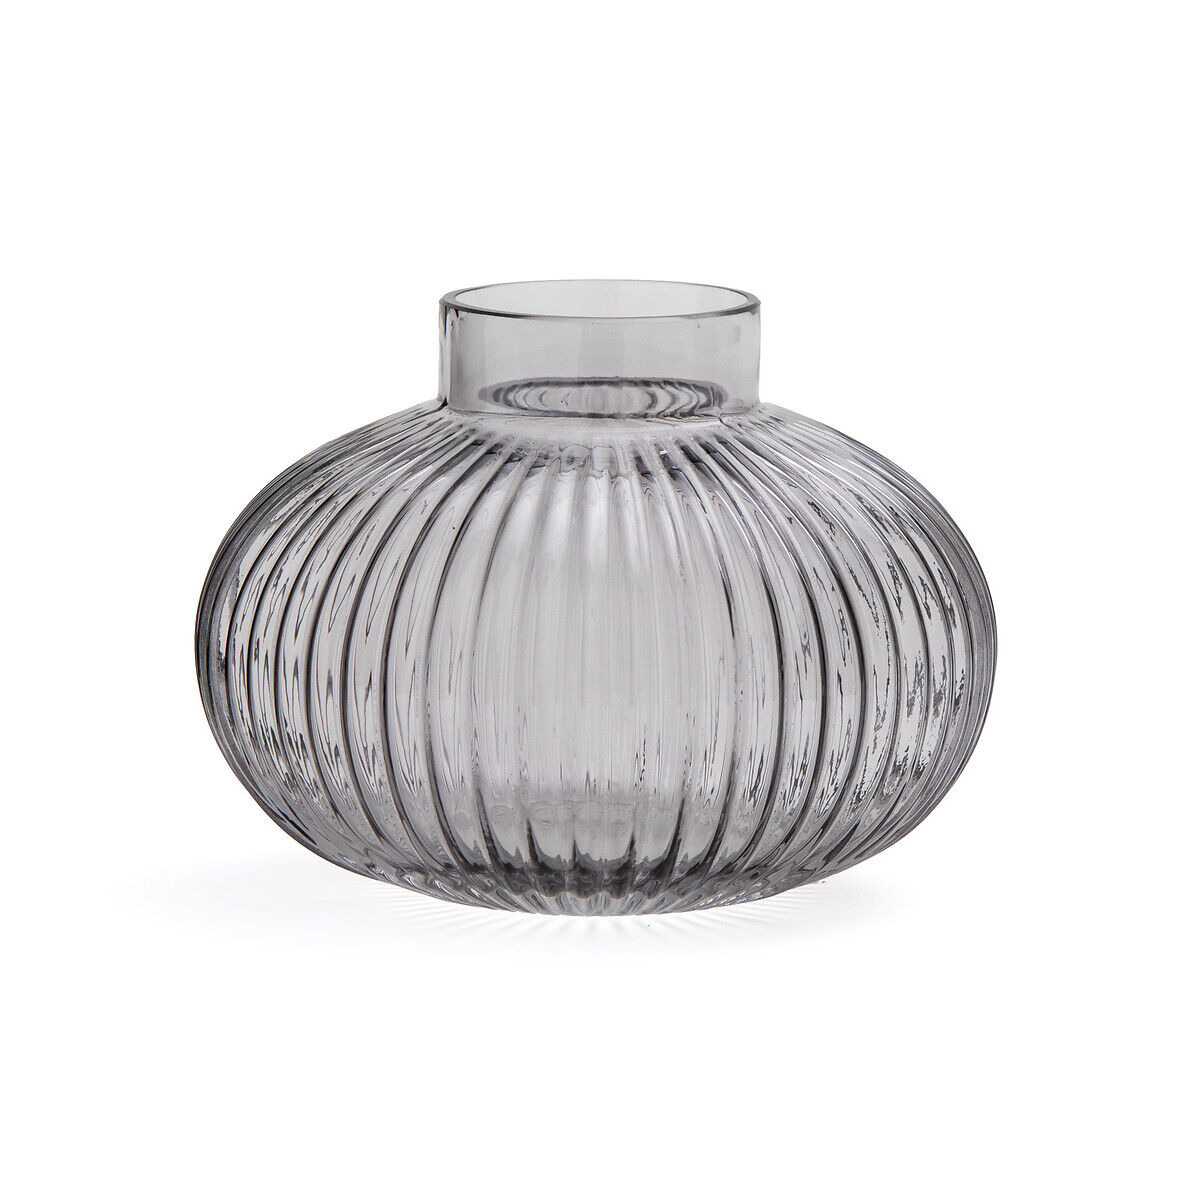 LA REDOUTE INTERIEURS Runde Vase Afa aus geriffeltem Glas, H. 15 cm ANDERE